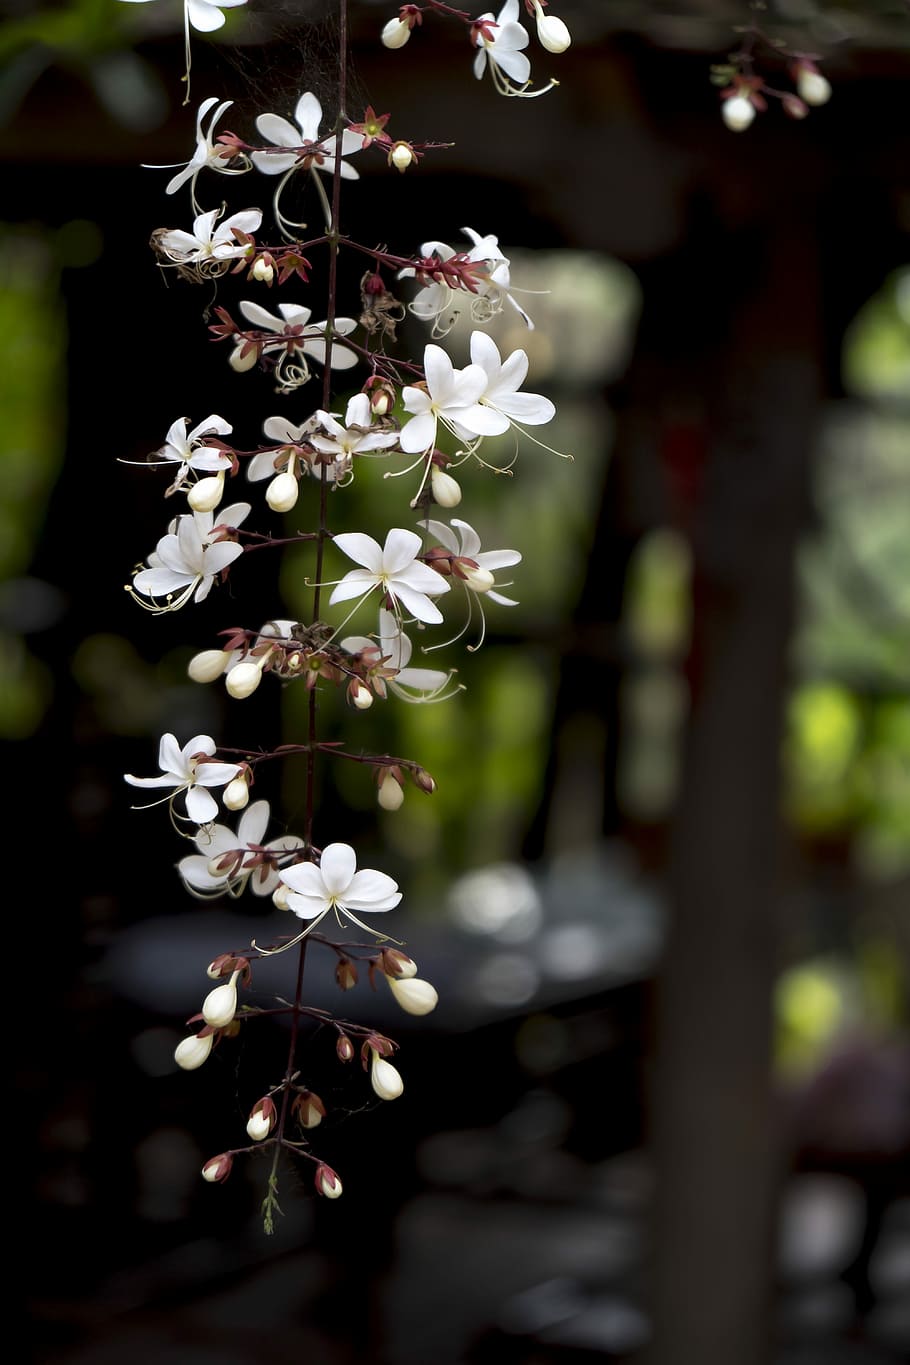 closeup, fotografi, putih, bunga petaled, dạ minh chau, halaman, bunga, latar belakang, lucu, taman